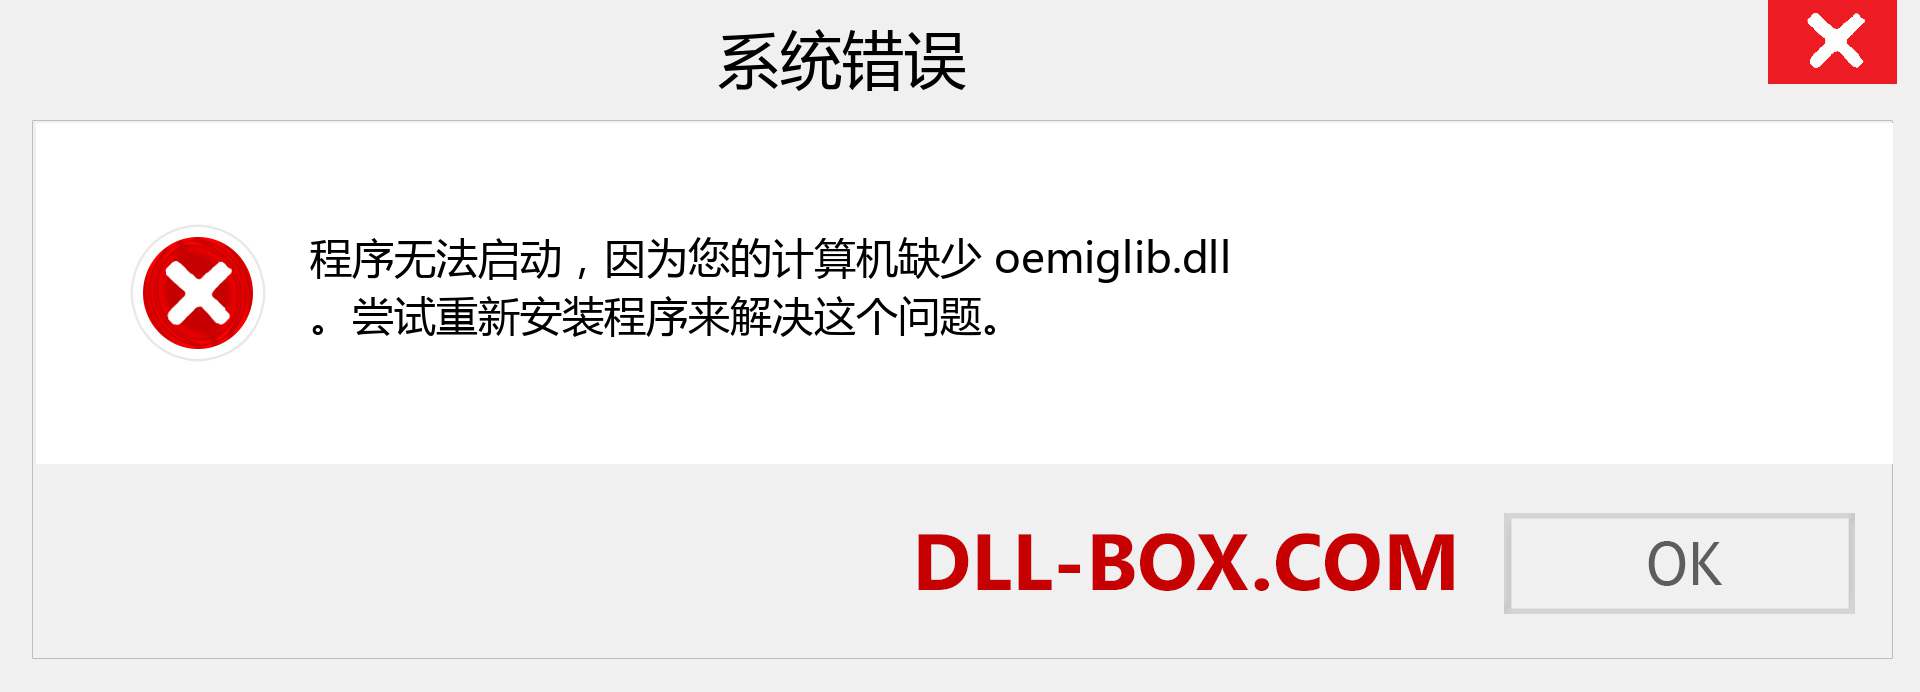 oemiglib.dll 文件丢失？。 适用于 Windows 7、8、10 的下载 - 修复 Windows、照片、图像上的 oemiglib dll 丢失错误